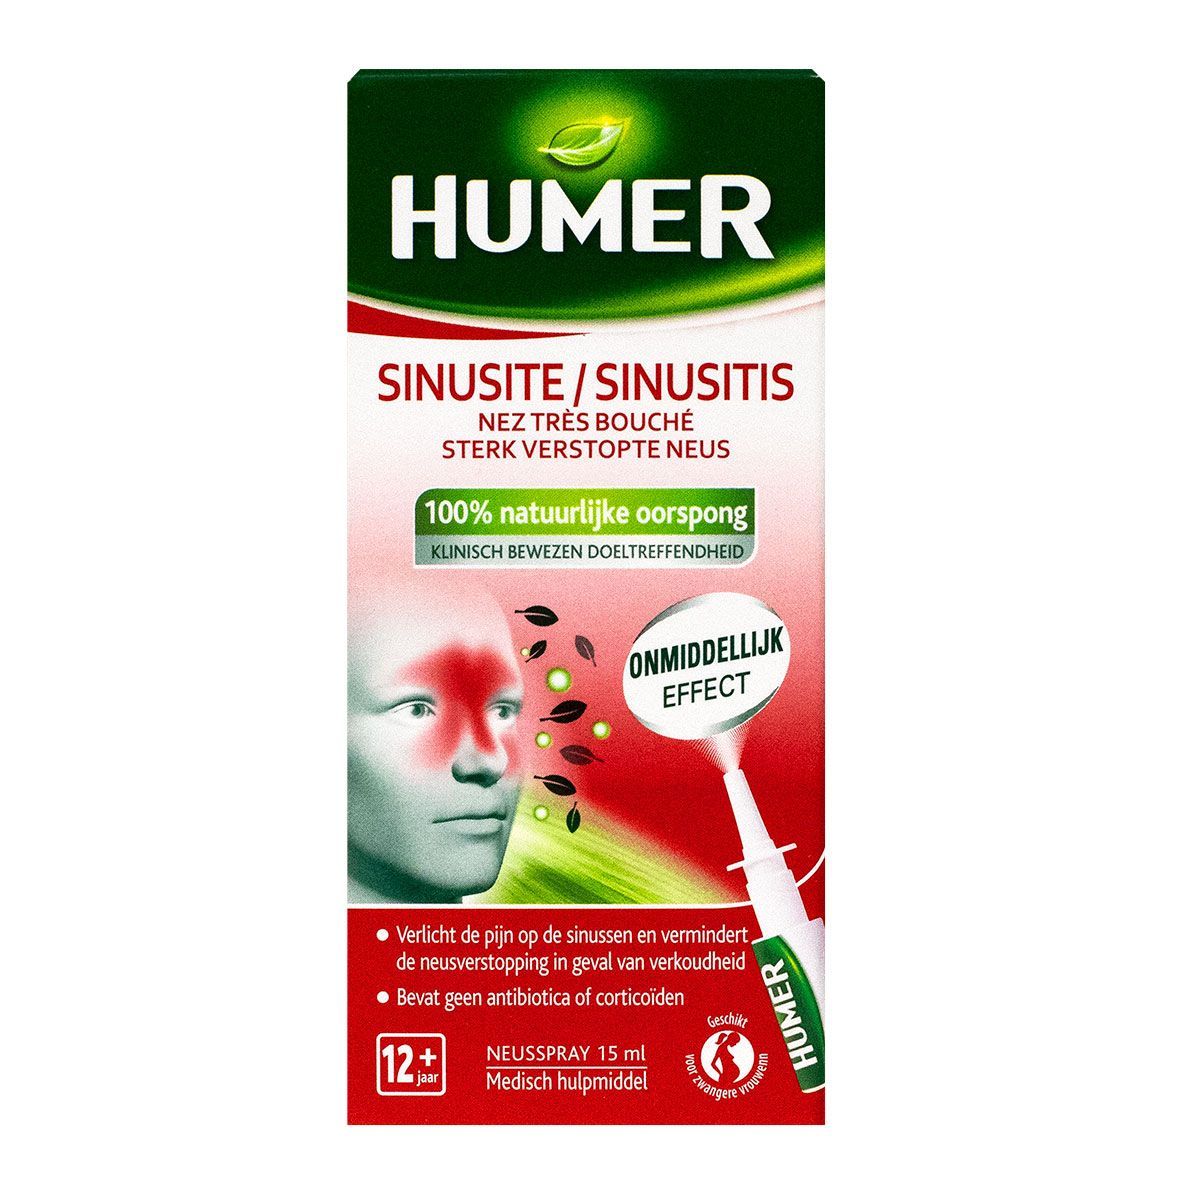 Le spray nasal sinusite Humer soulage la douleur au niveau des